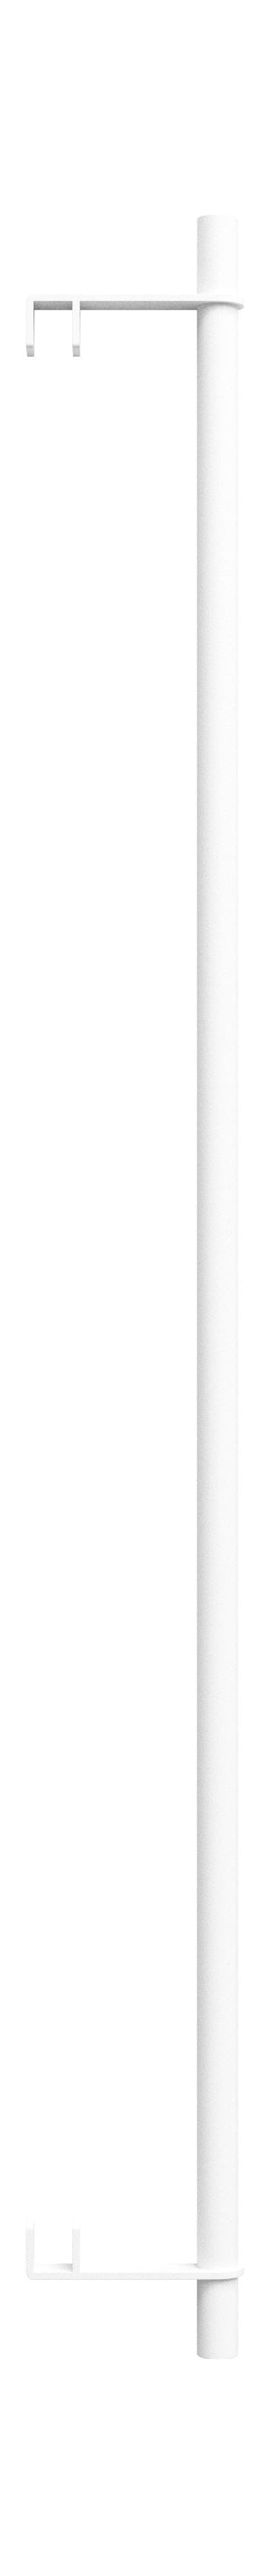 Moebe Hyllsystem/vägghyllkläder bar 85 cm, vit